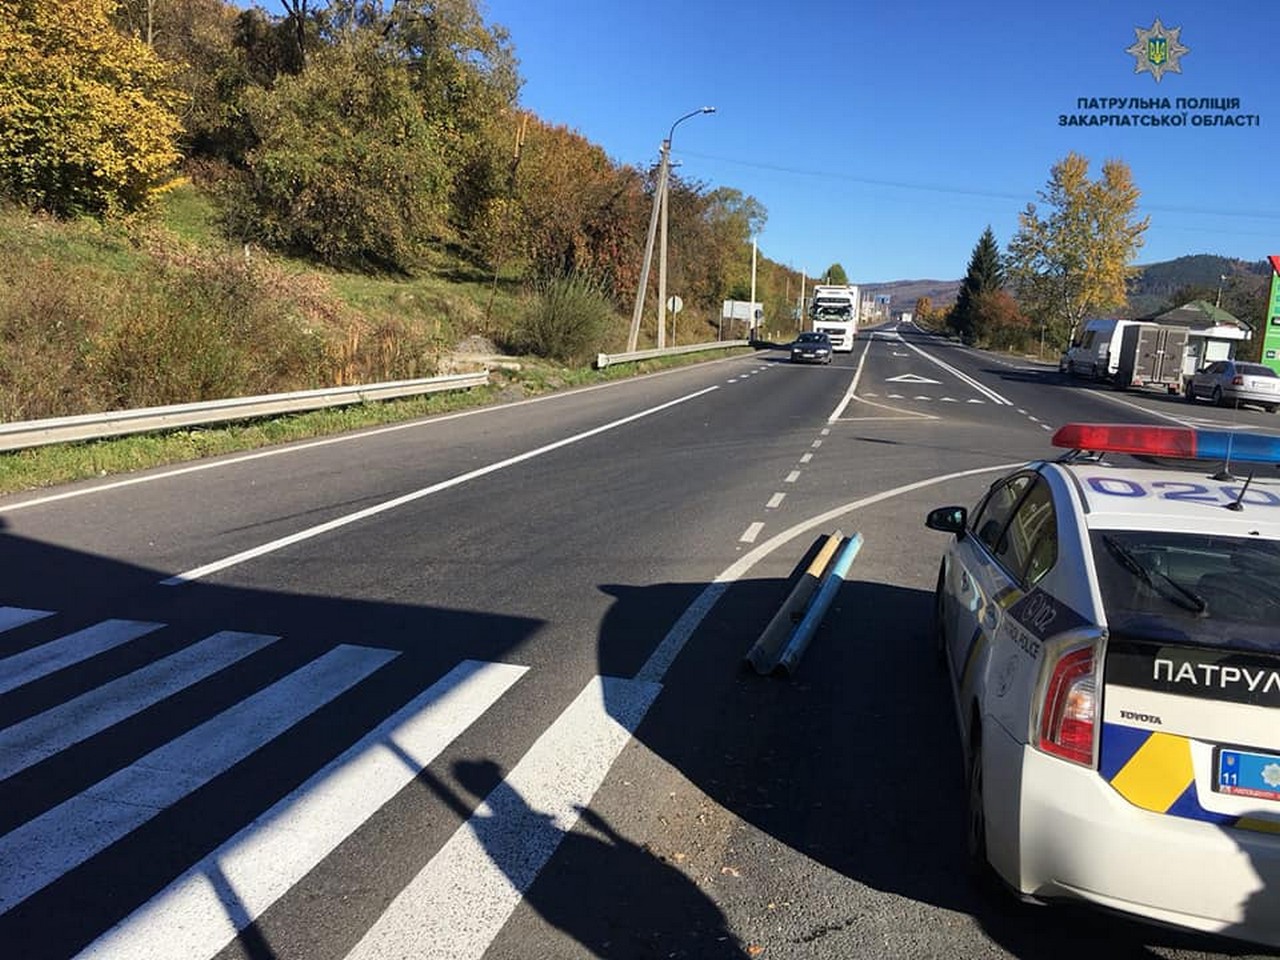 Сьогодні вранці, 11 жовтня, у Воловецькому районі перекрили трасу 